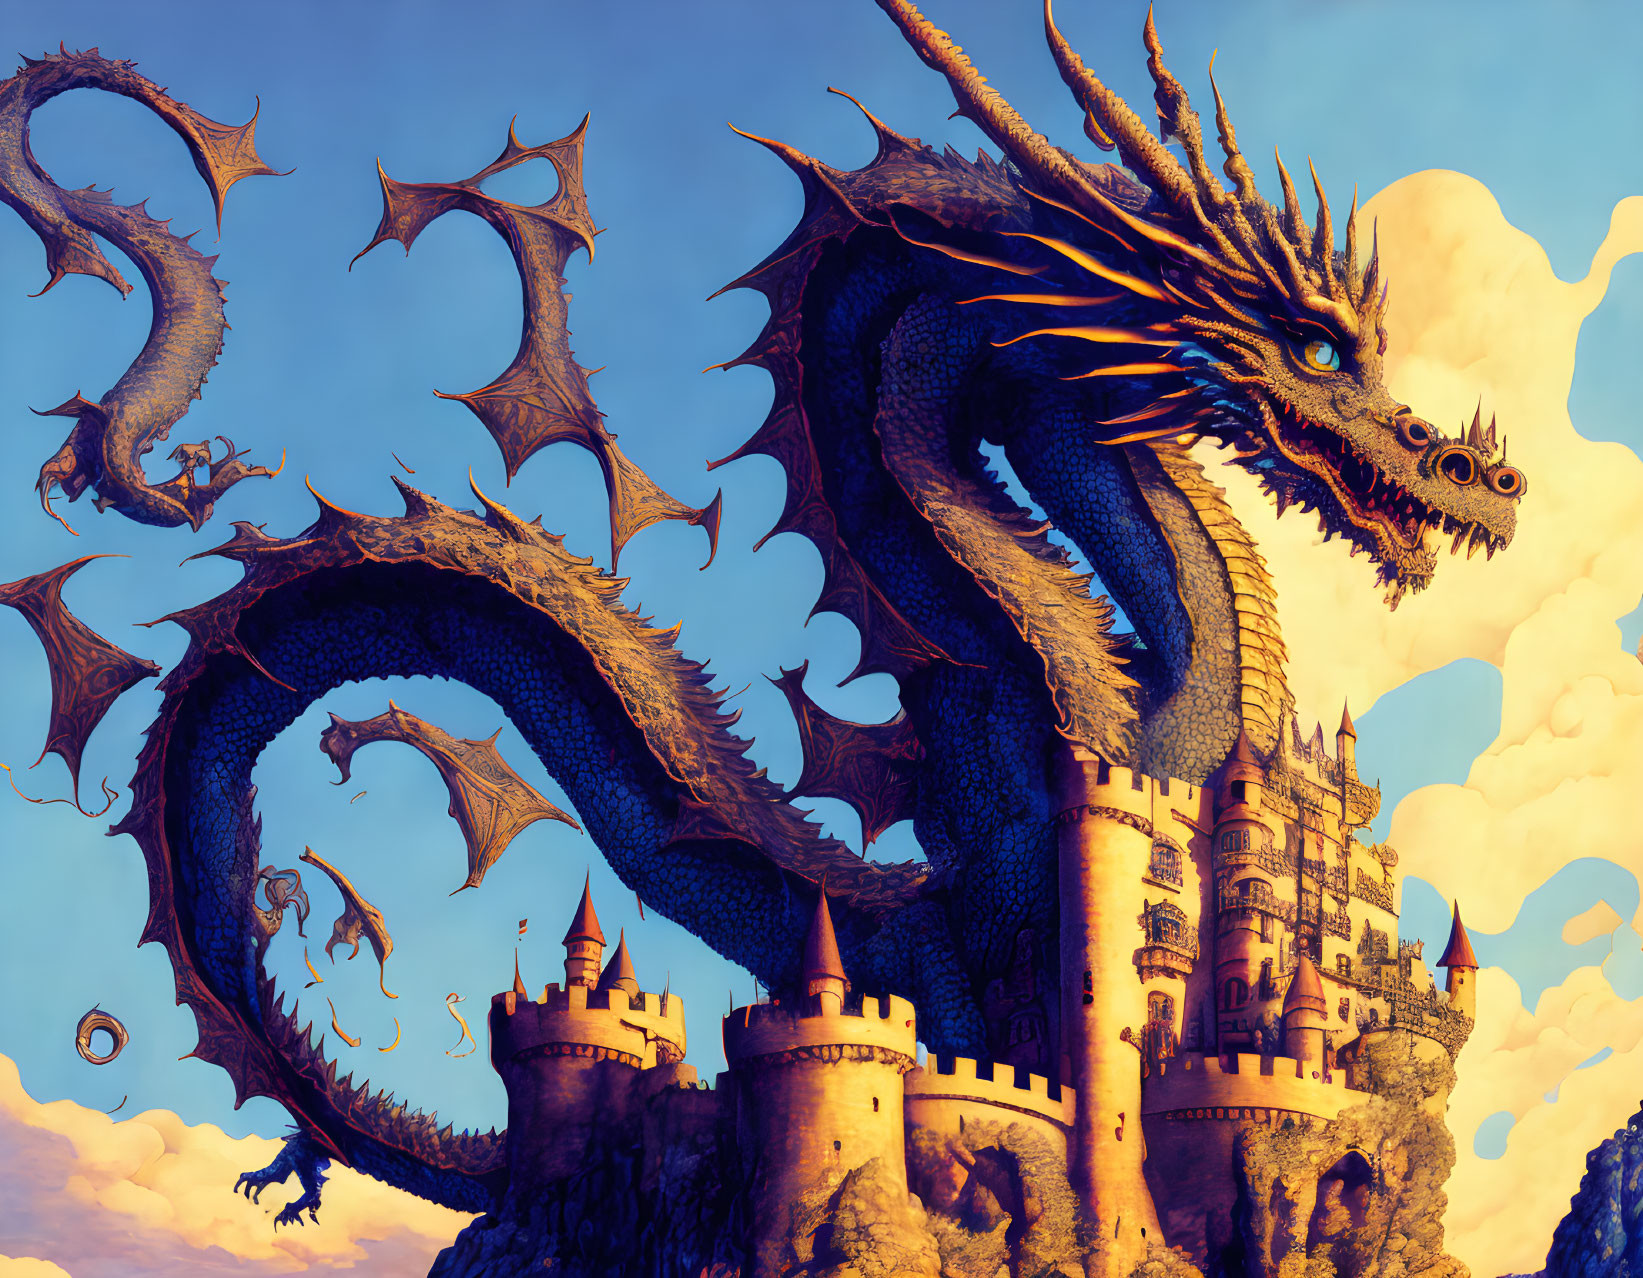 Blue dragon encircles ancient castle under golden sky